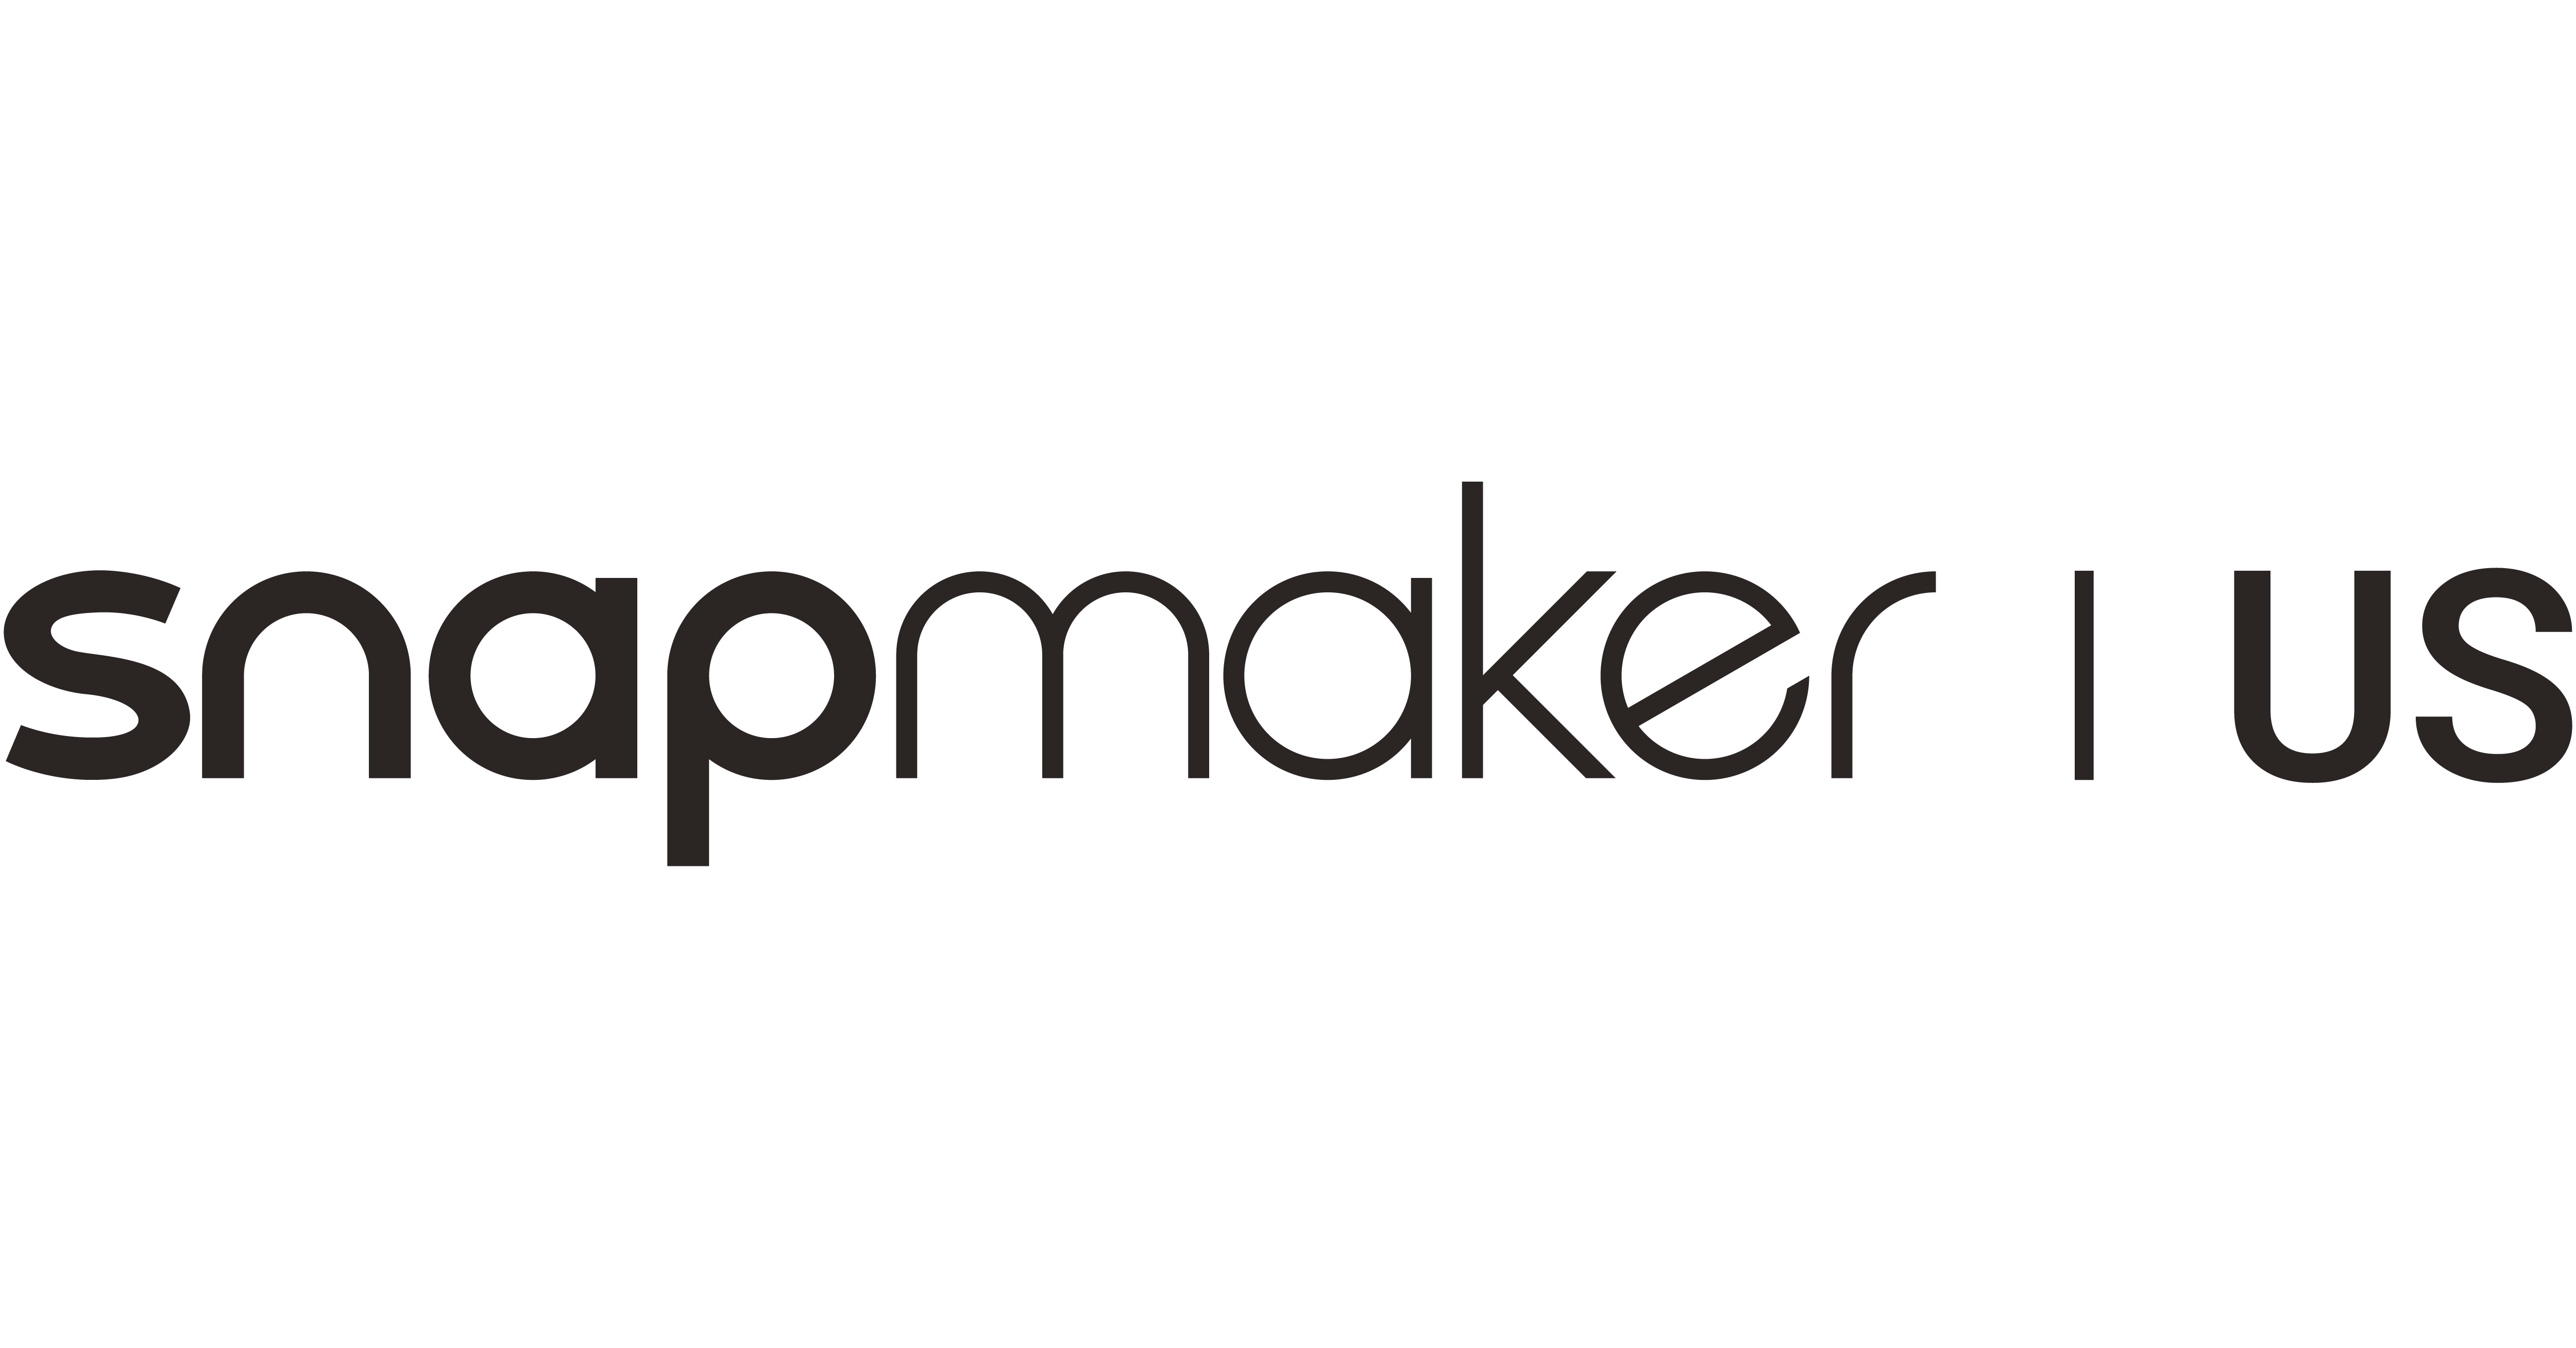 Snapmaker 2.0 - Best 3D Printer Under 5000 USD
– Snapmaker US
